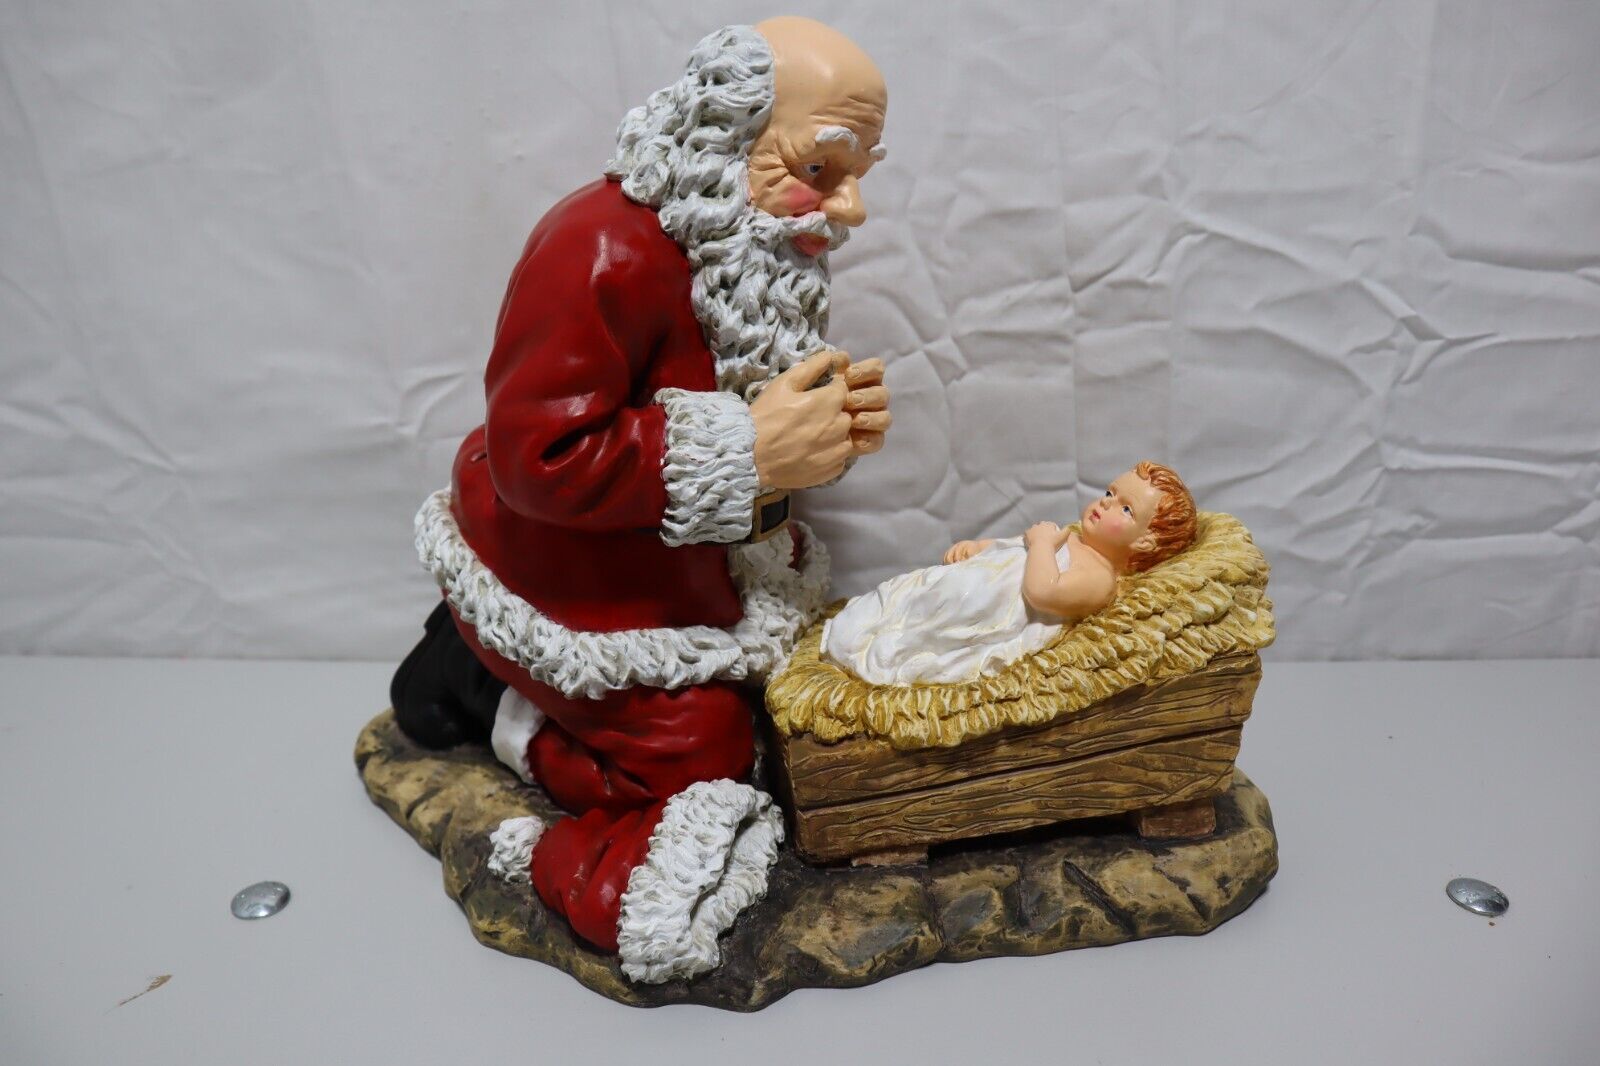 Christmas Kneeling Santa And Baby Jesus 1989/2002 By R P Gauer, Roman